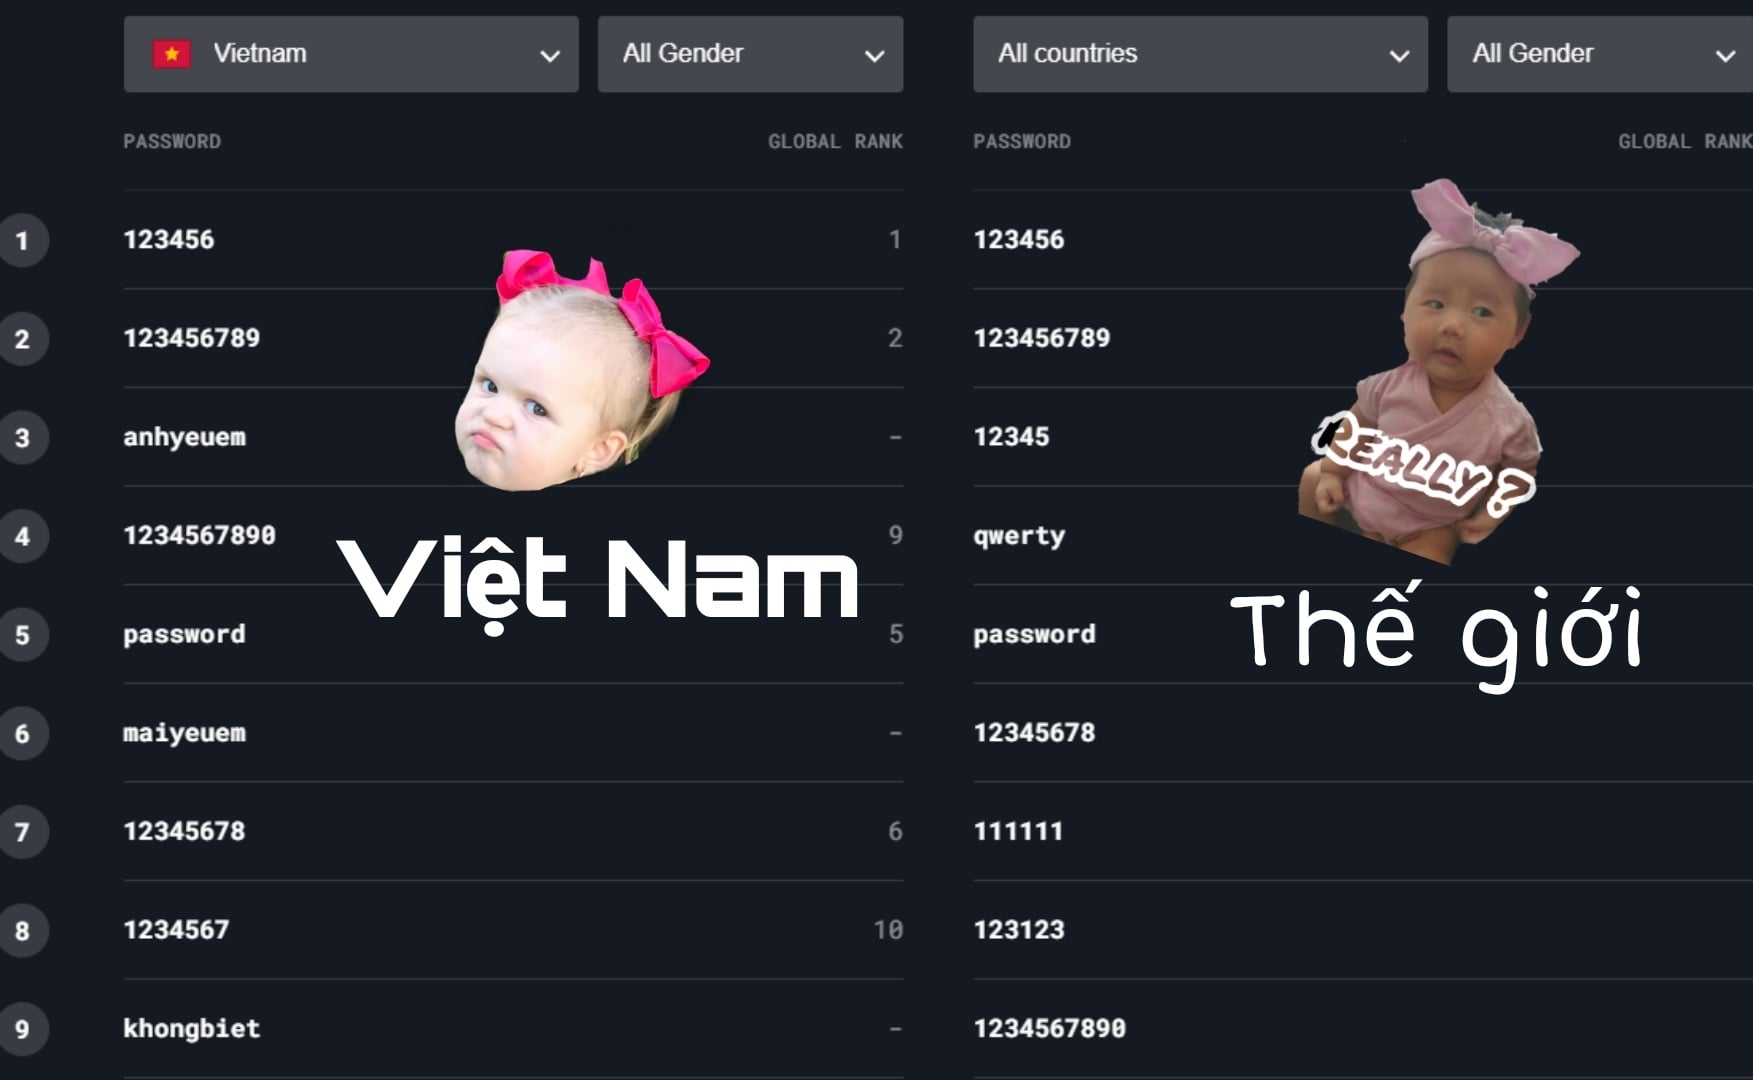 'anhyeuem' tiếp tục lọt top mật khẩu 'tệ' được người Việt dùng nhiều nhất năm 2021